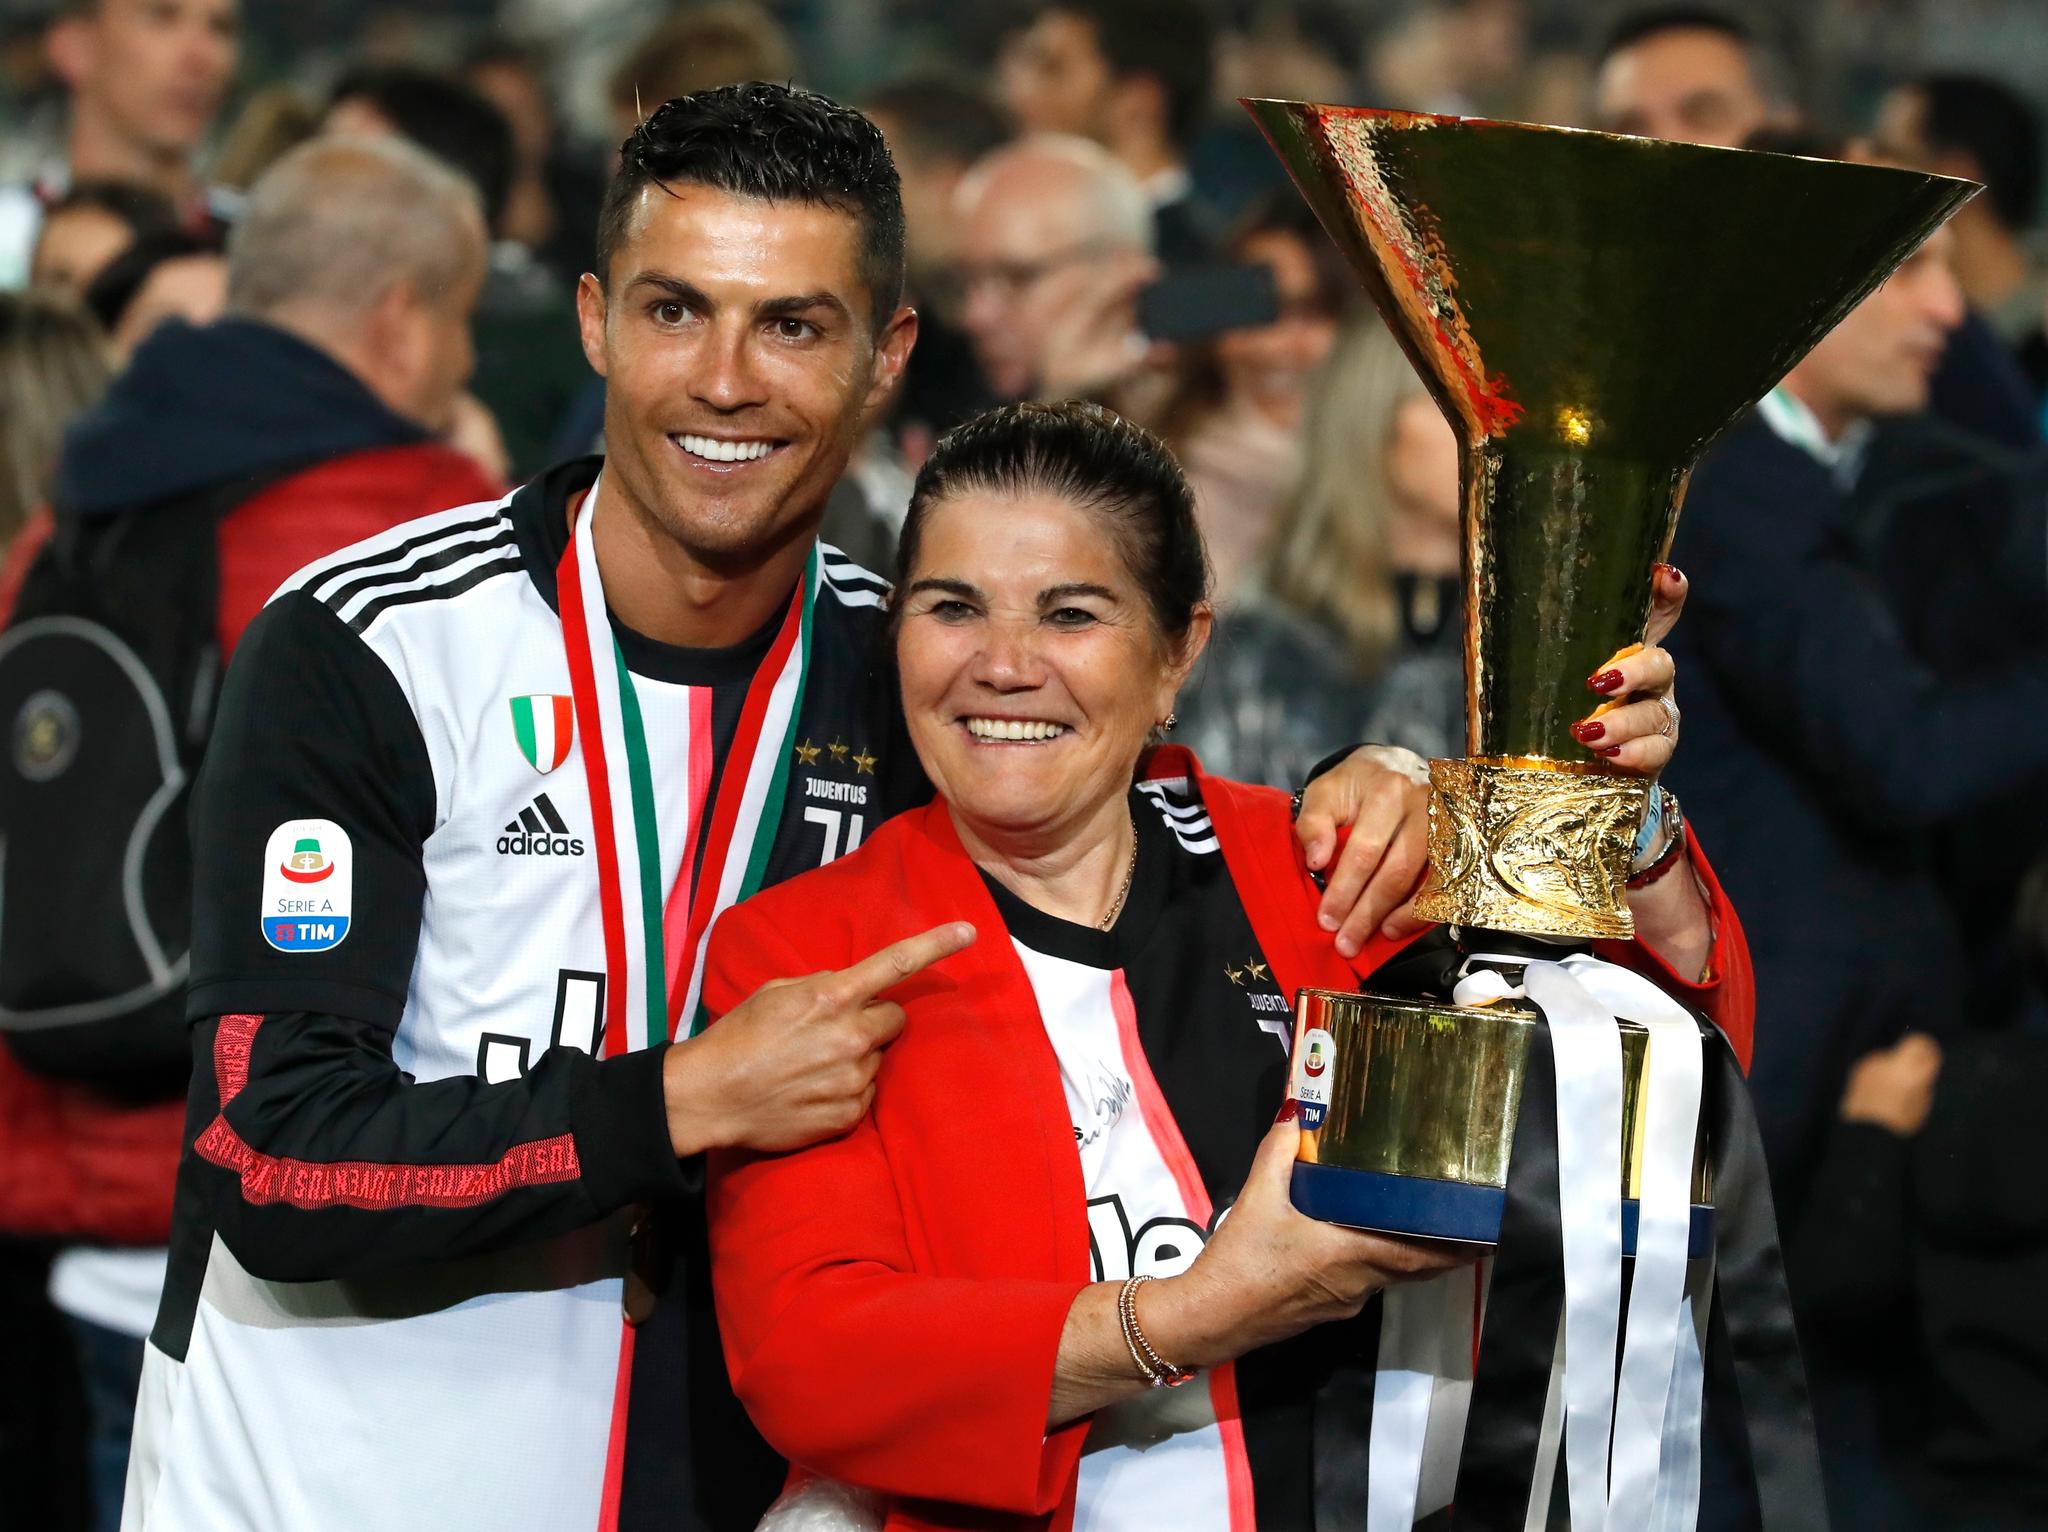 MOR OG SØNN: Cristiano Ronaldo spiller fotball for arabiske Al-Nassr den dag i dag. Her er han imidlertid avbildet med mor Dolores Aveiro etter at Ronaldo vant Serie A med Juventus i 2019.